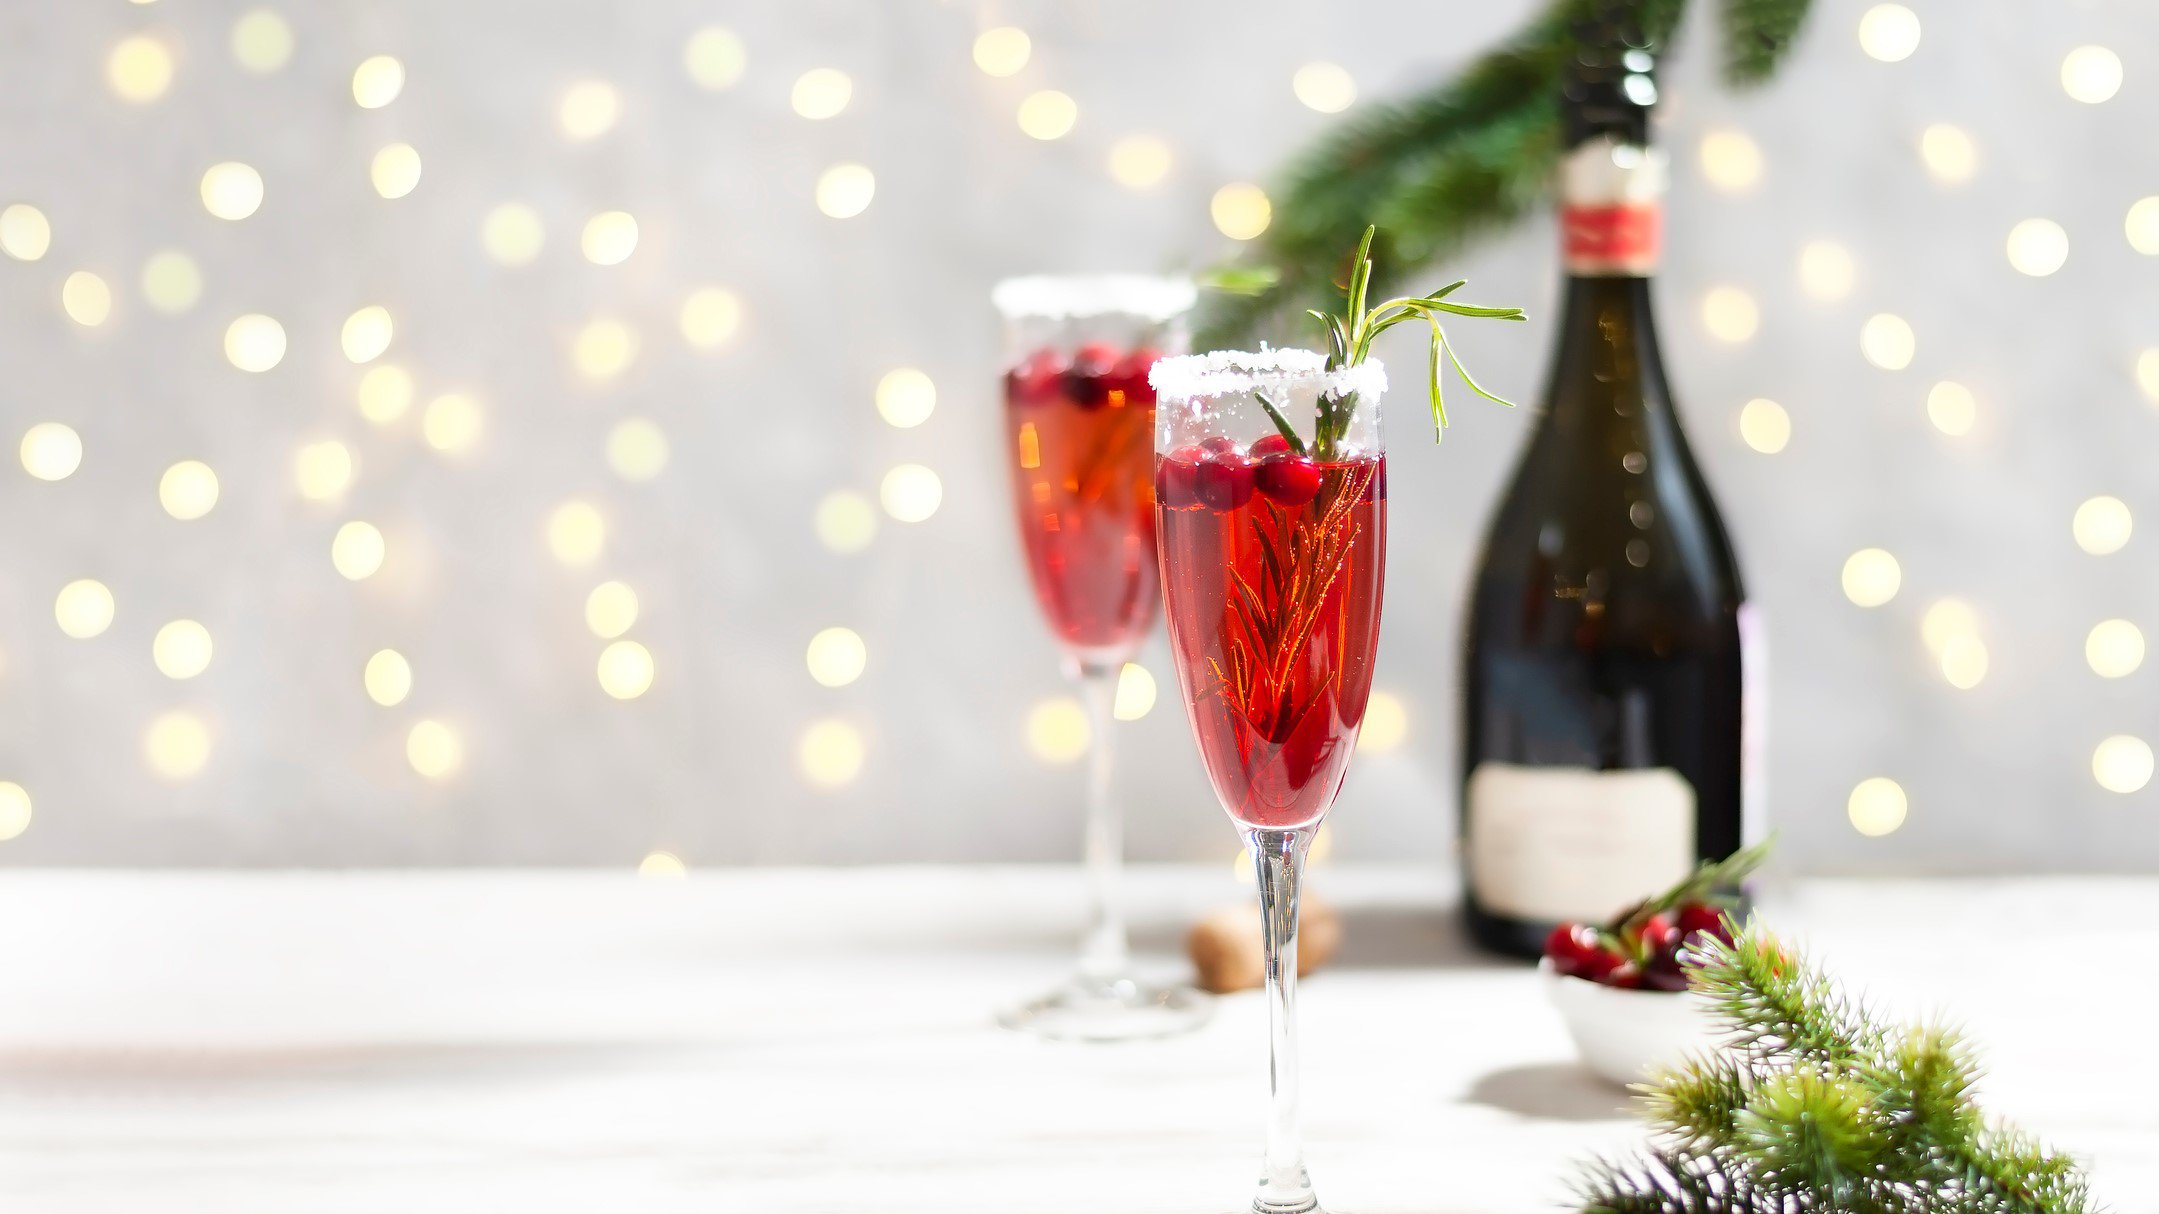 Zwei Gläser Cranberry Mimosas vor einem hellen Hintergrund, dahinter erkennt man unscharf eine Lichterkette und eine Champagnerflasche.